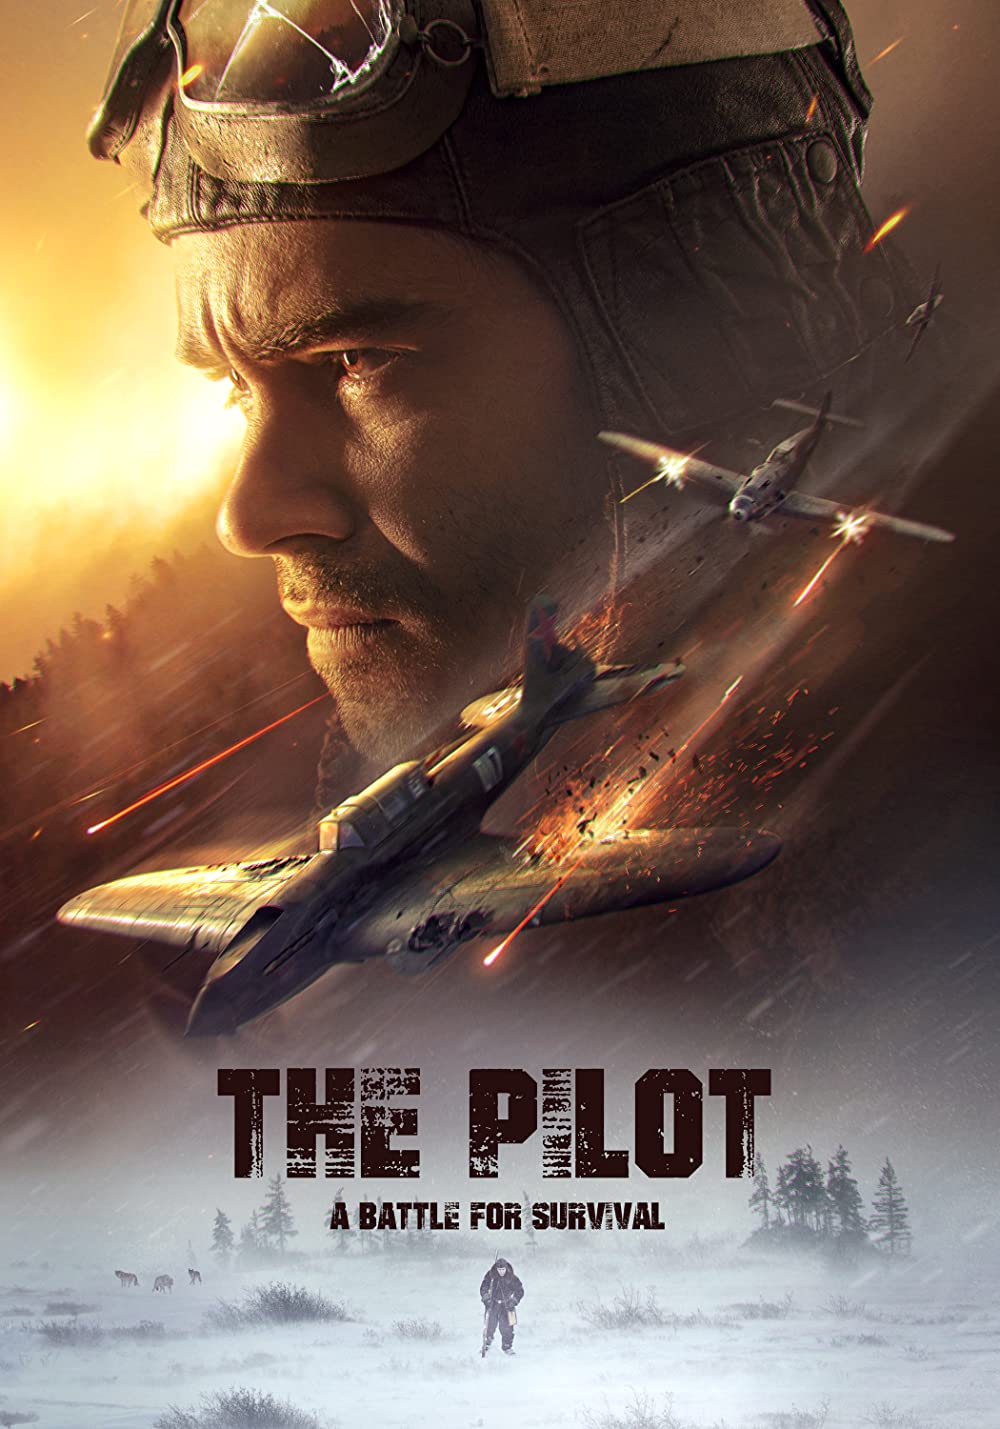 The Pilot - A Battle for Survival (OV)